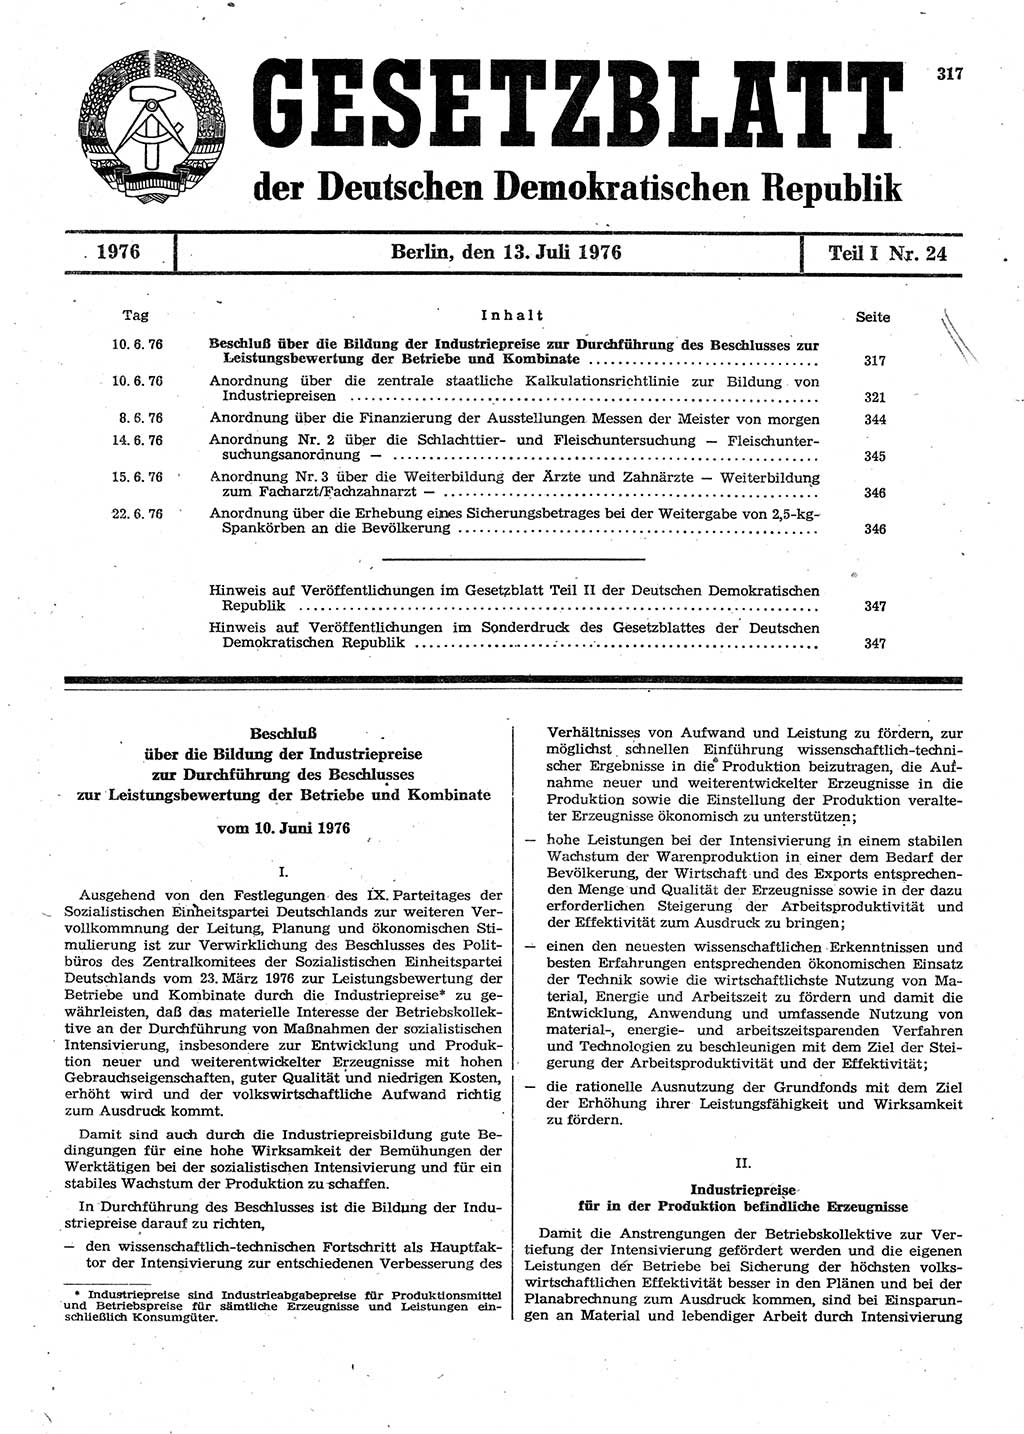 Gesetzblatt (GBl.) der Deutschen Demokratischen Republik (DDR) Teil Ⅰ 1976, Seite 317 (GBl. DDR Ⅰ 1976, S. 317)